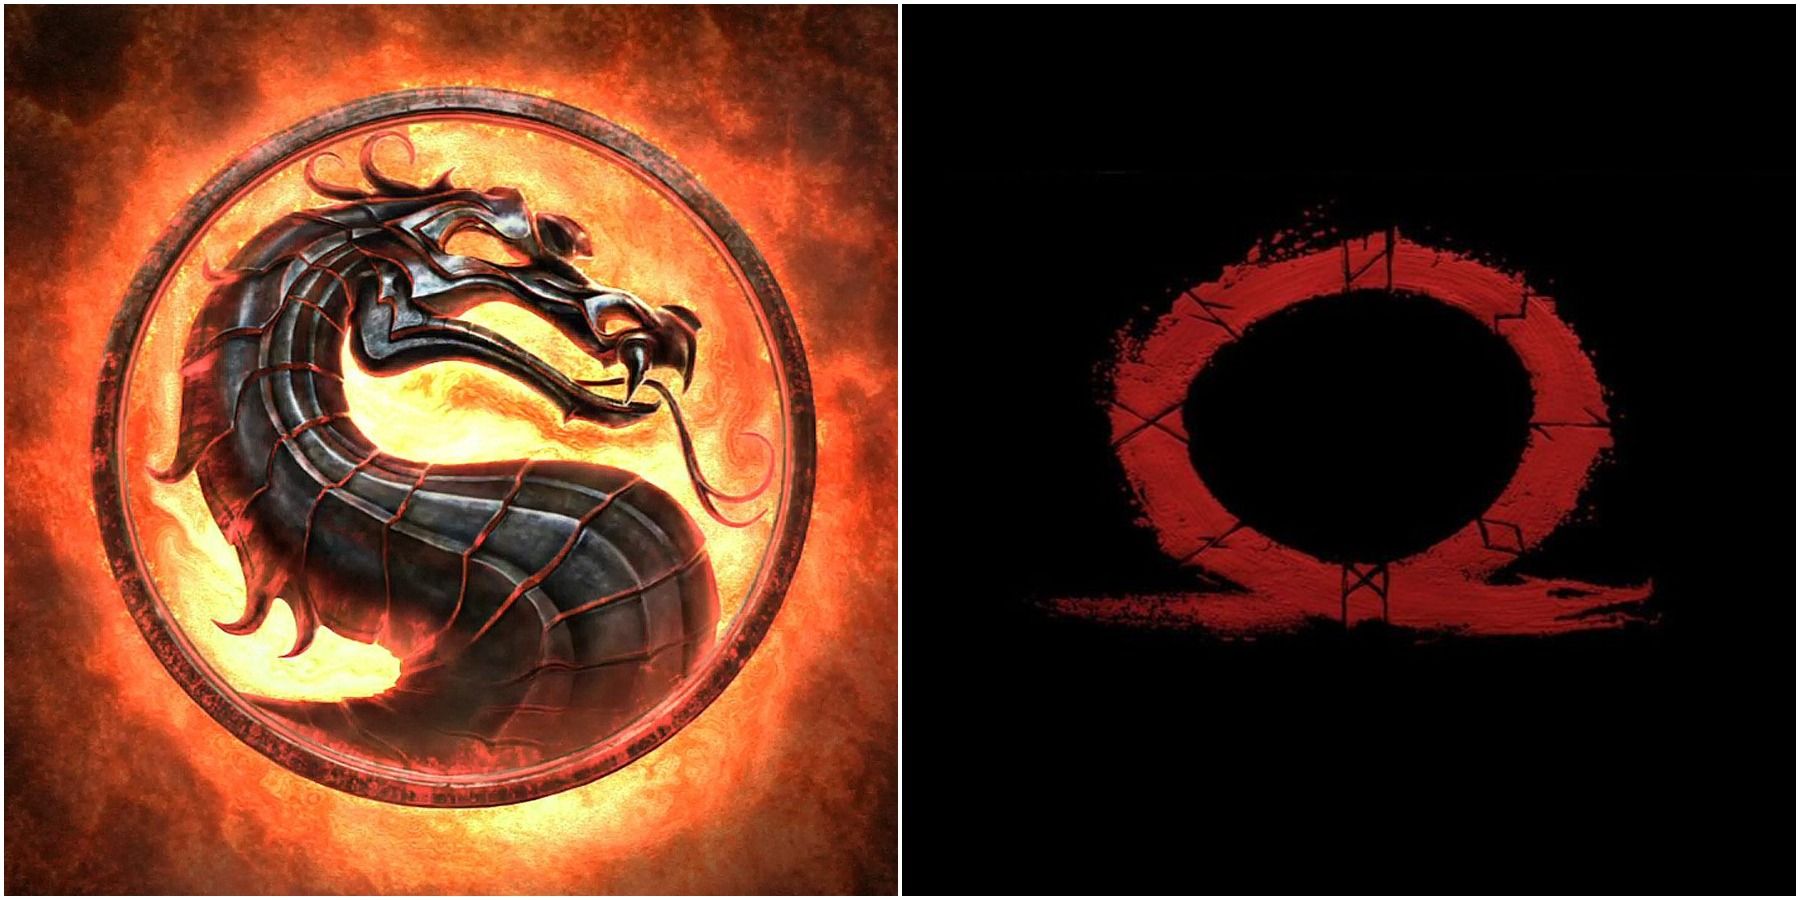 (Left) Mortal Kombat logo (Right) God of War (2018) logo